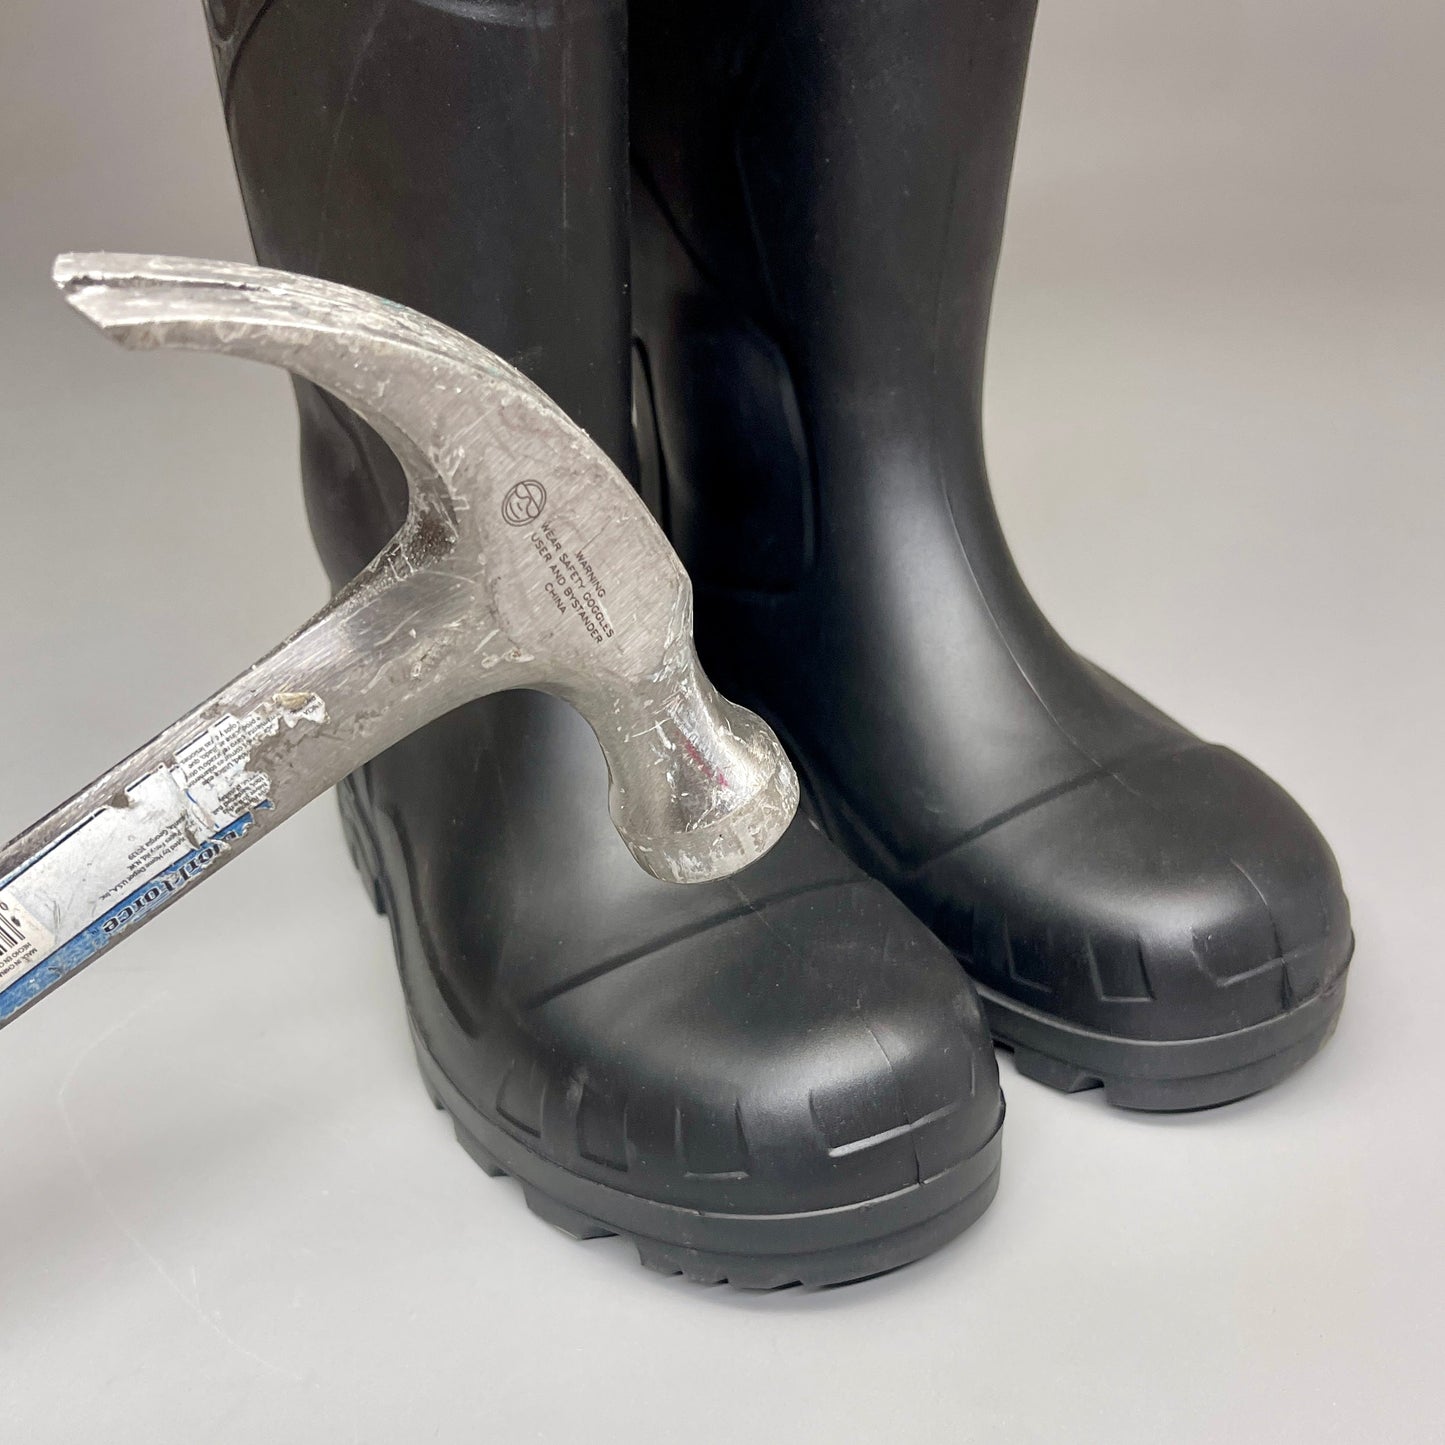 DUNLOP Steel Toe Safety Boots Waterproof Black Sz M 14 W 16 #86776